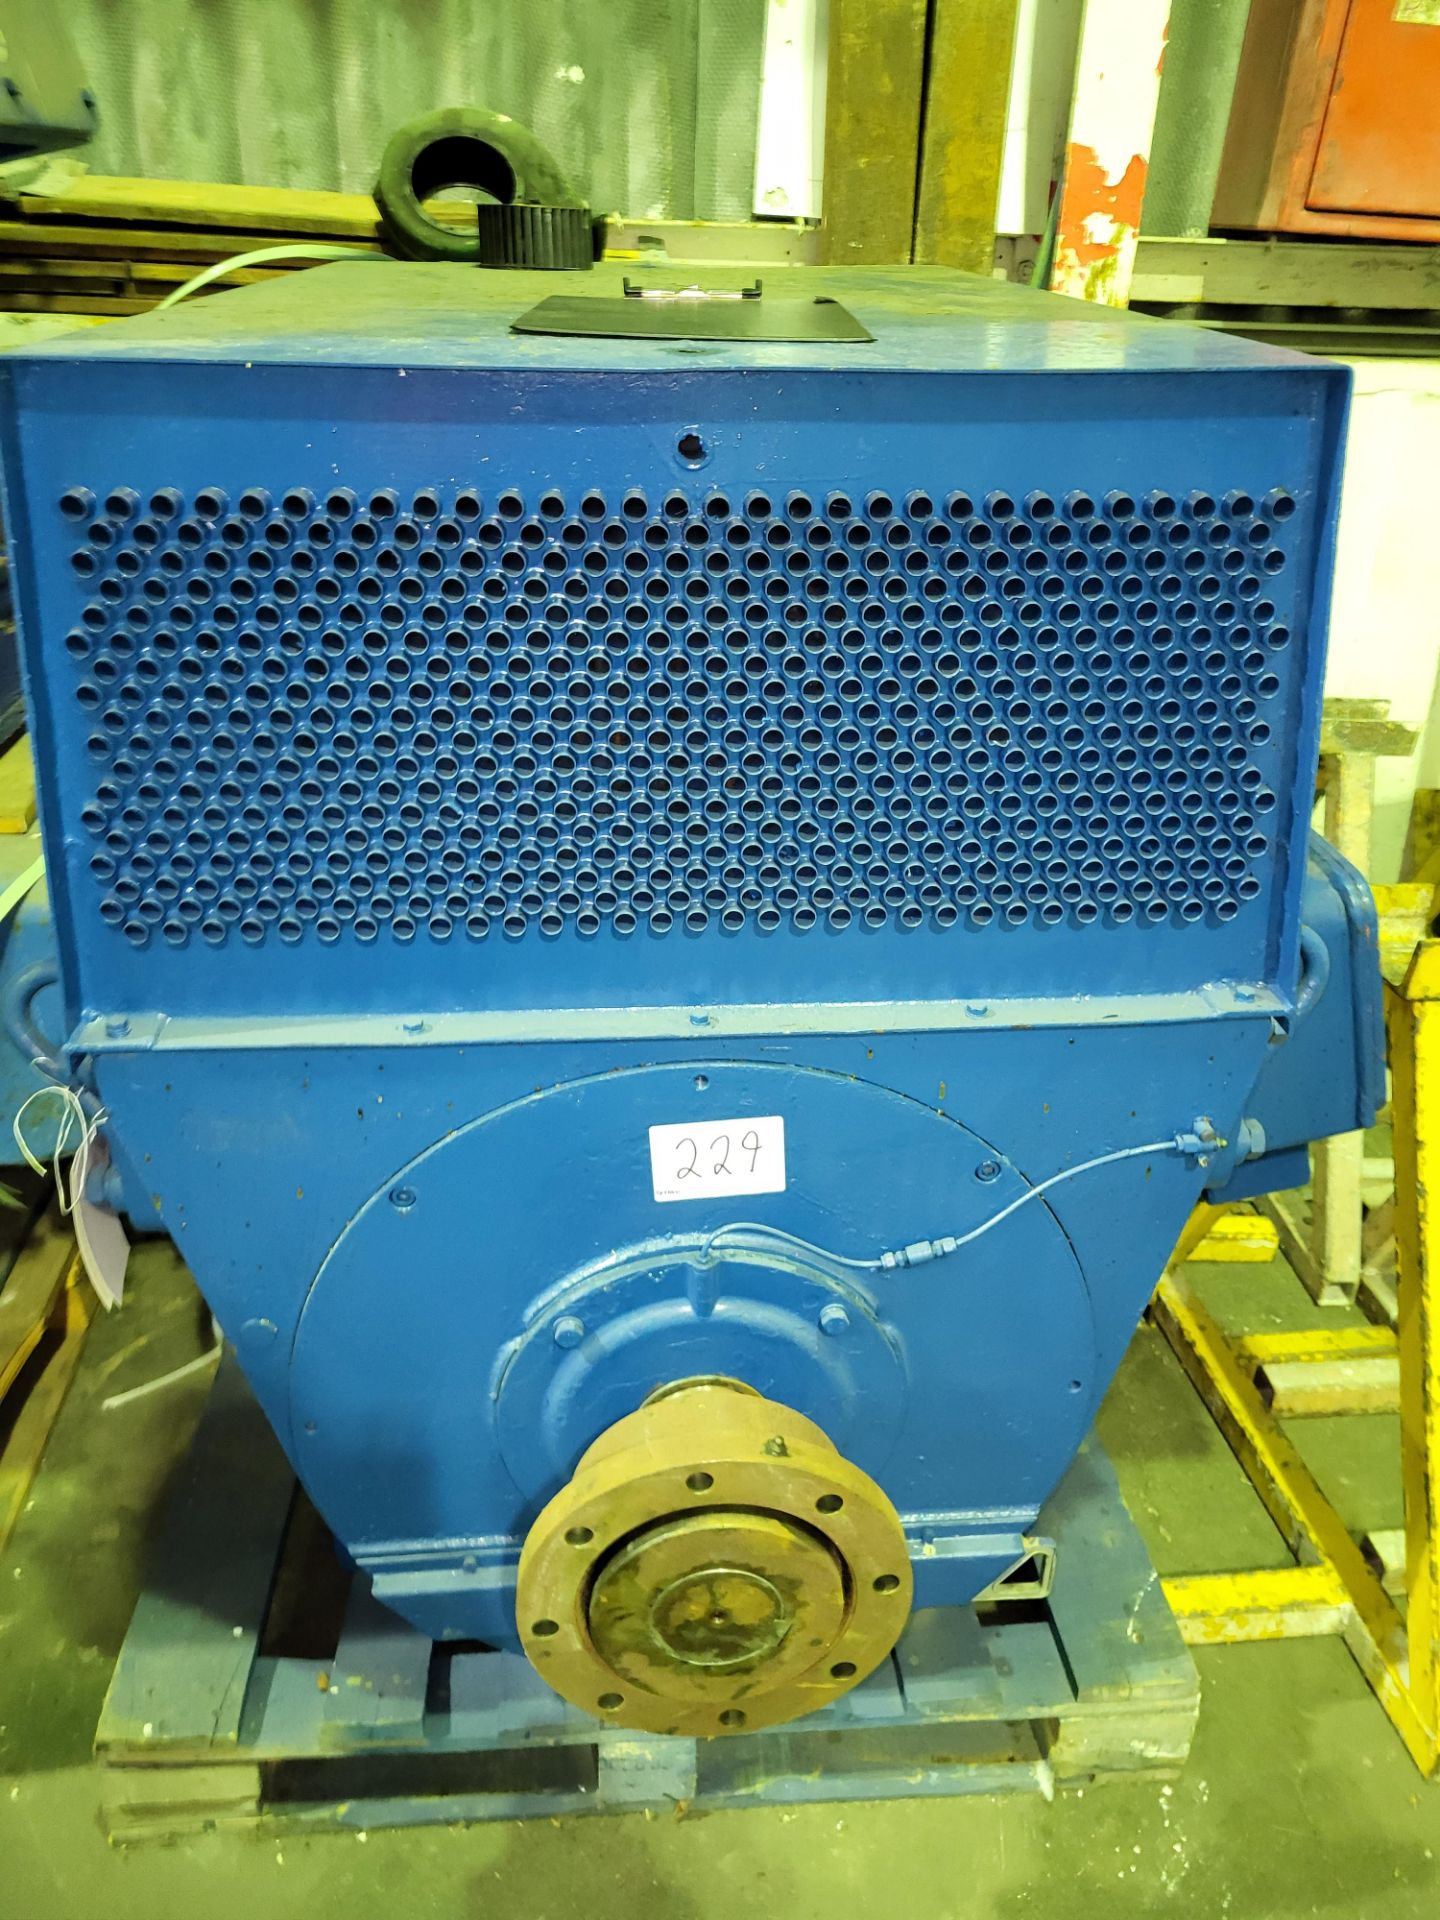 1 GEC Model 0355-8B. Serial No. 074510802, Voltage